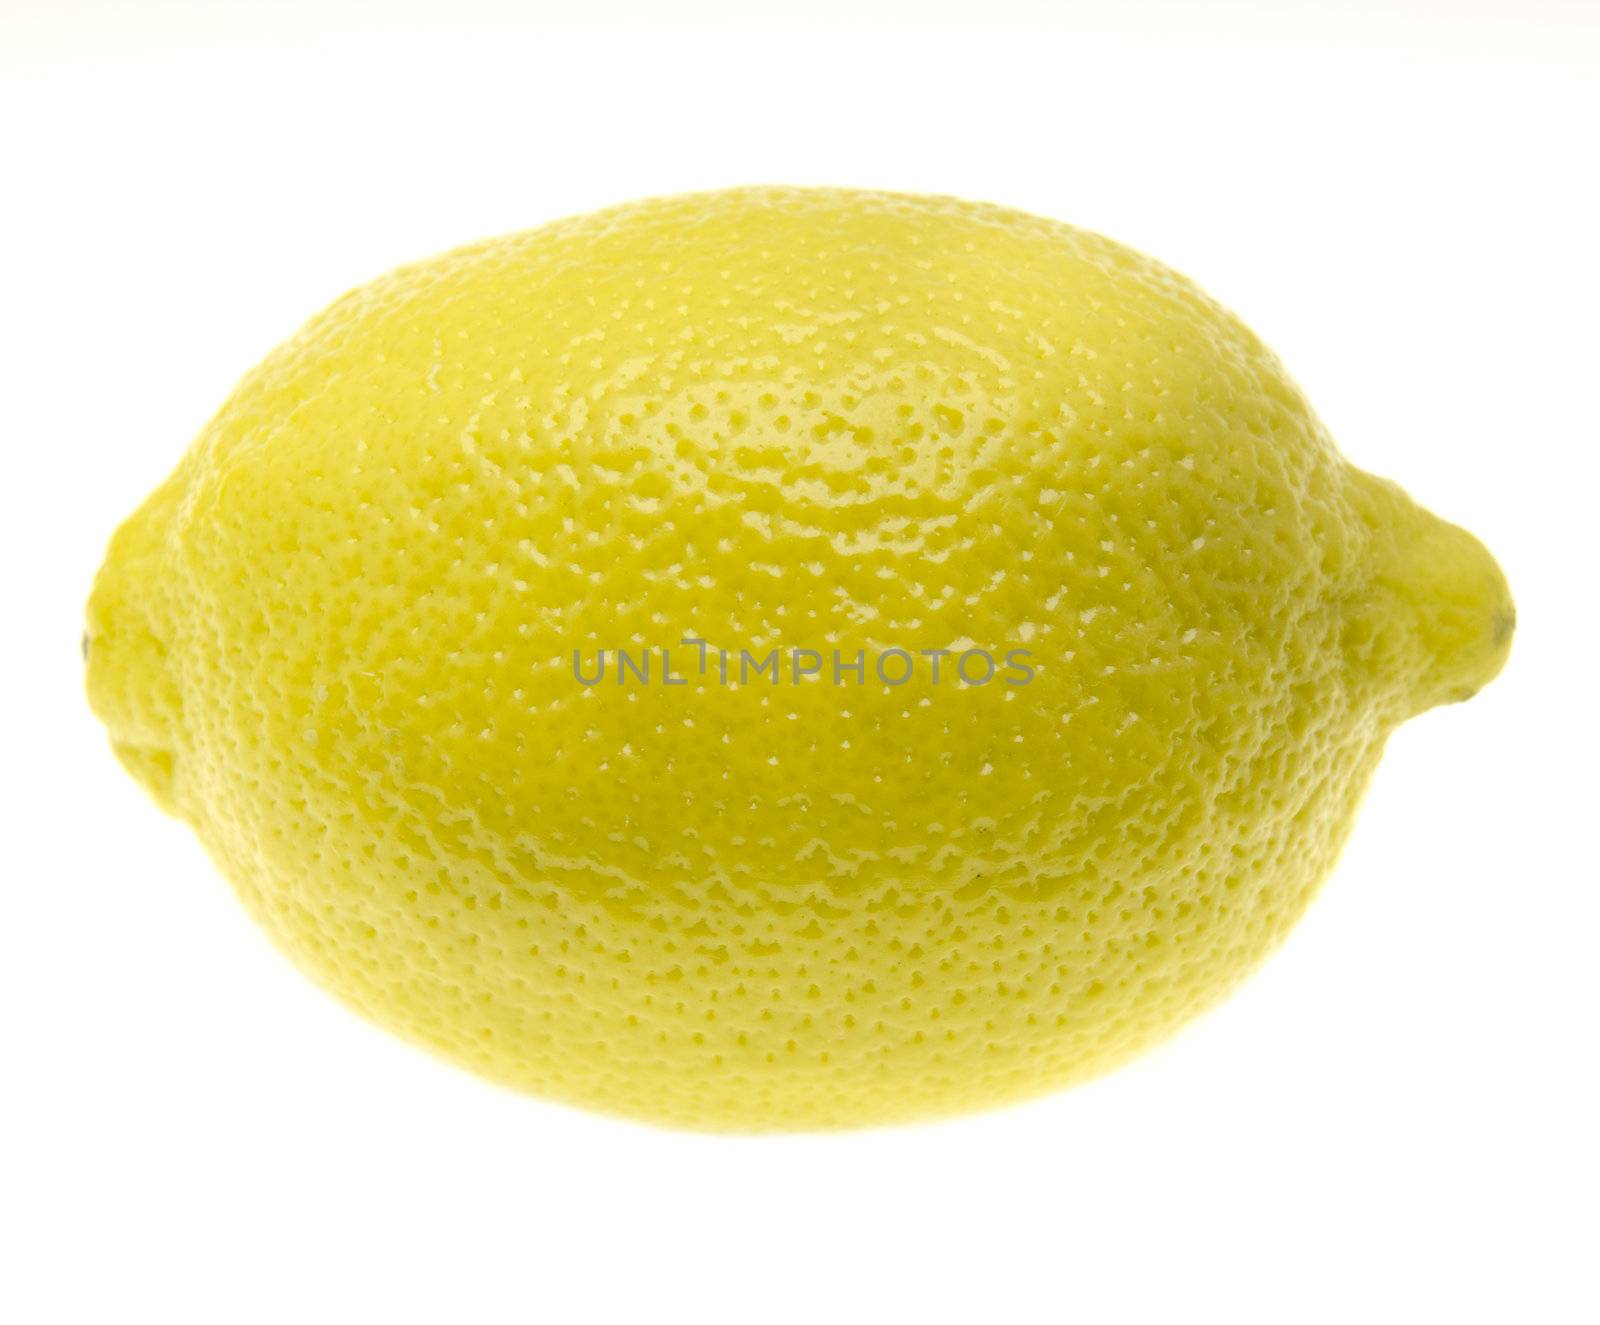 lemon by bakalusha